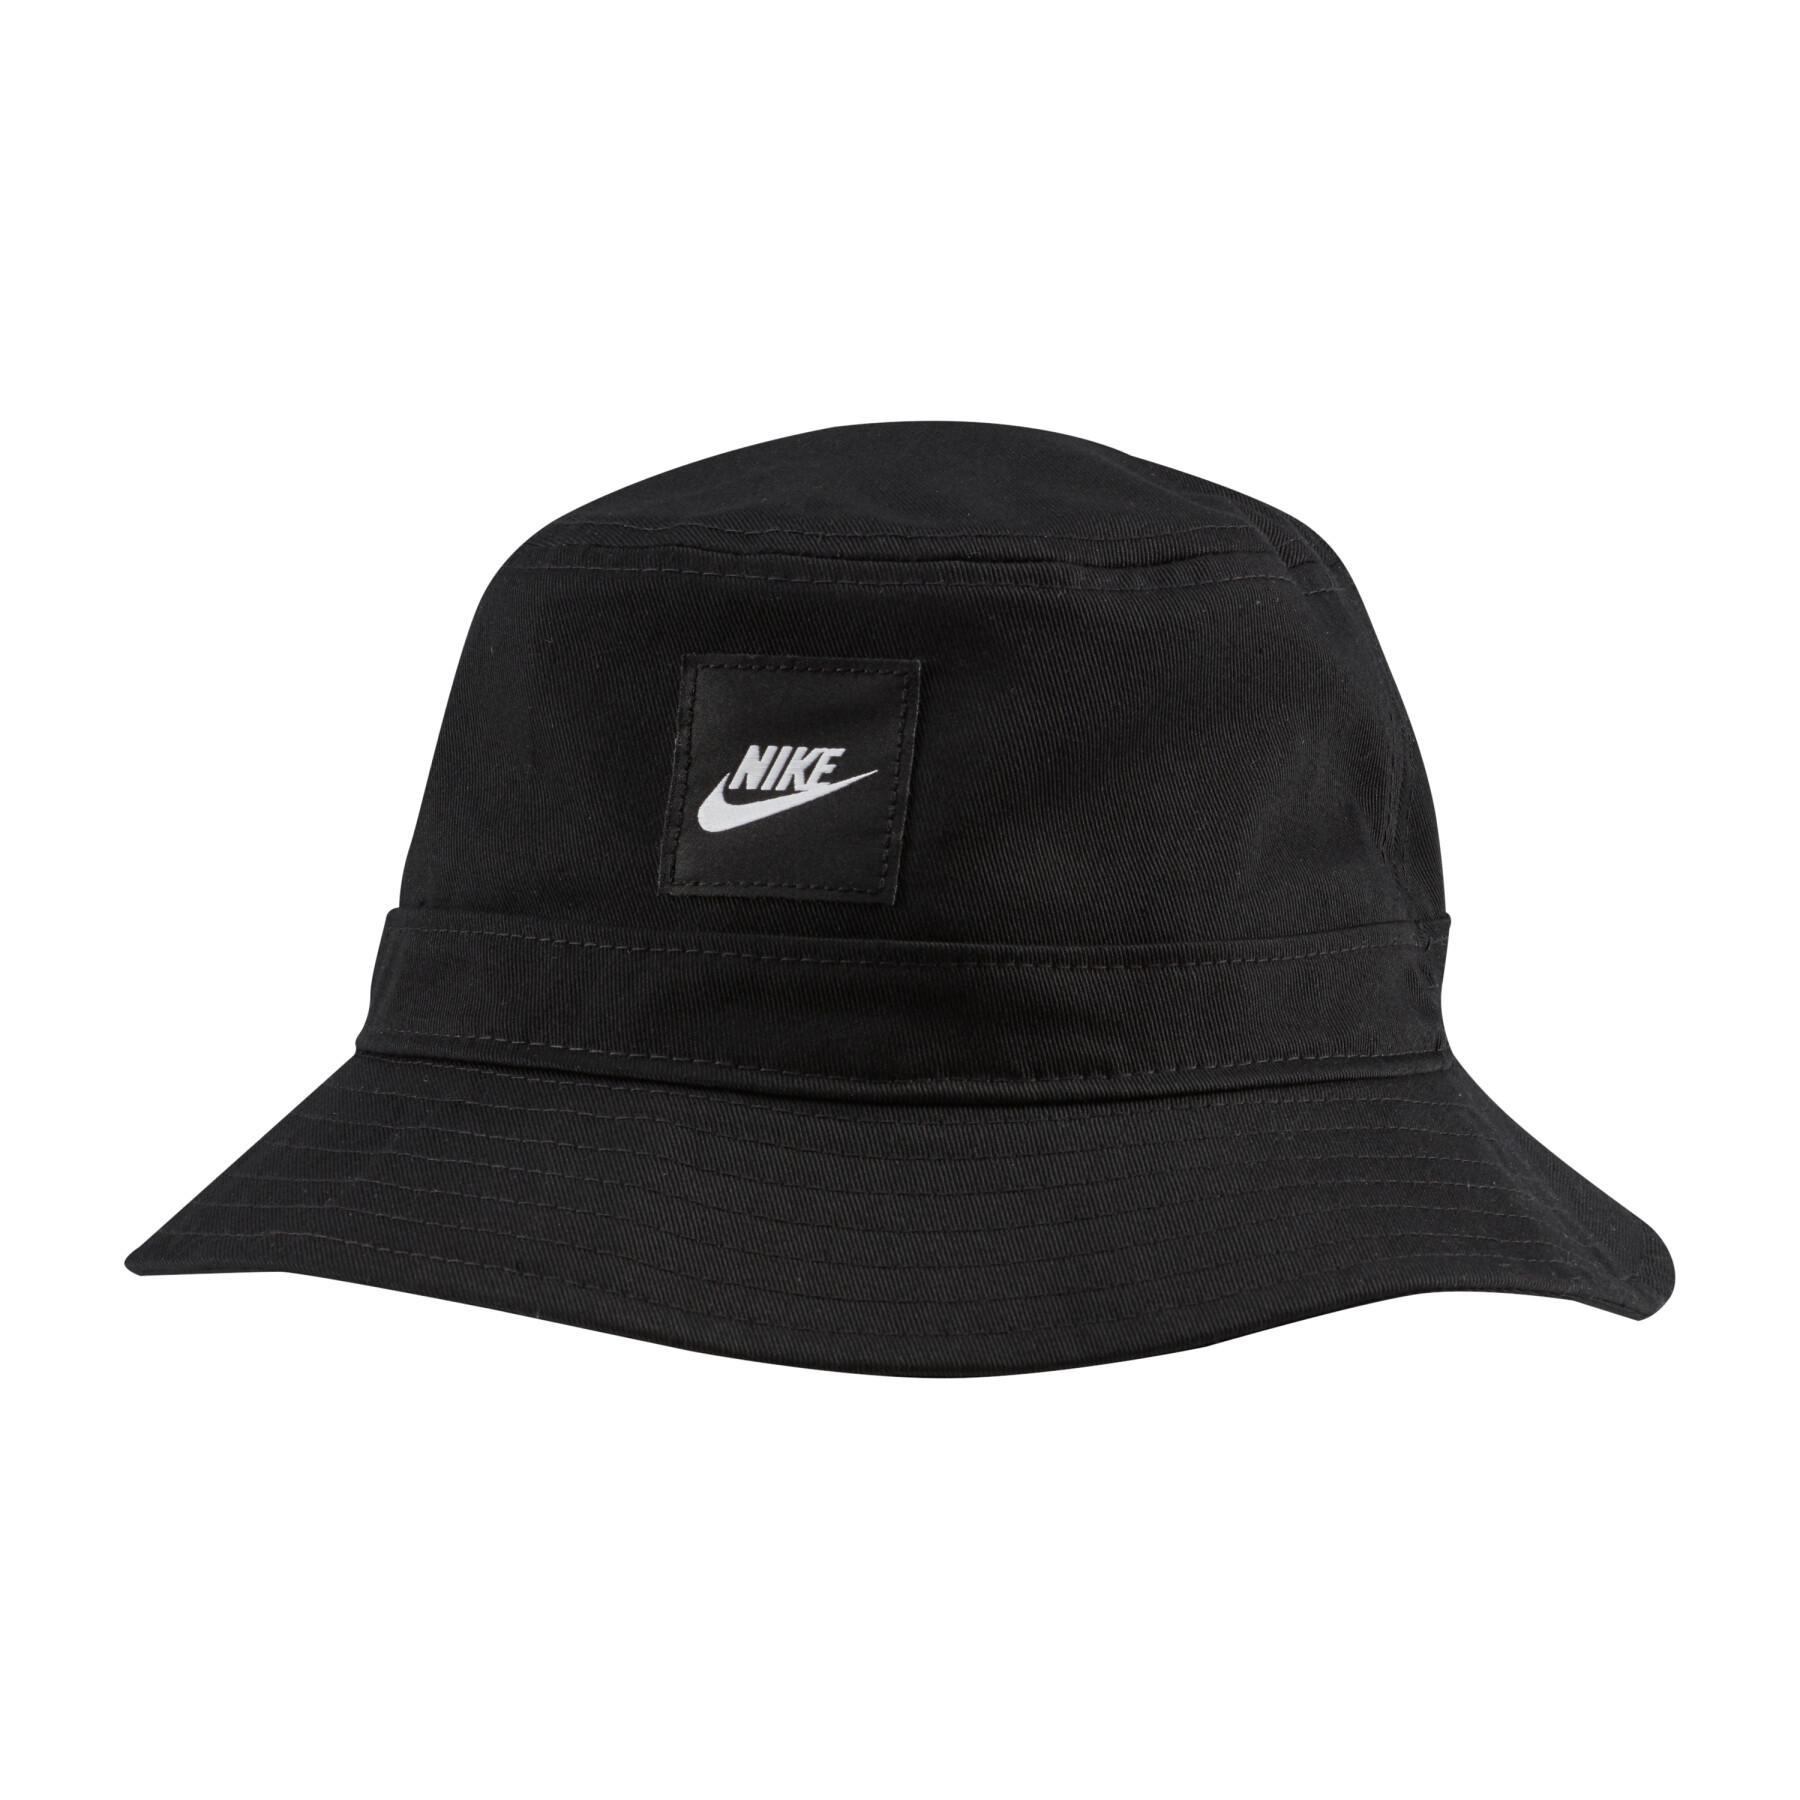 Nike sportwear bucket hat black